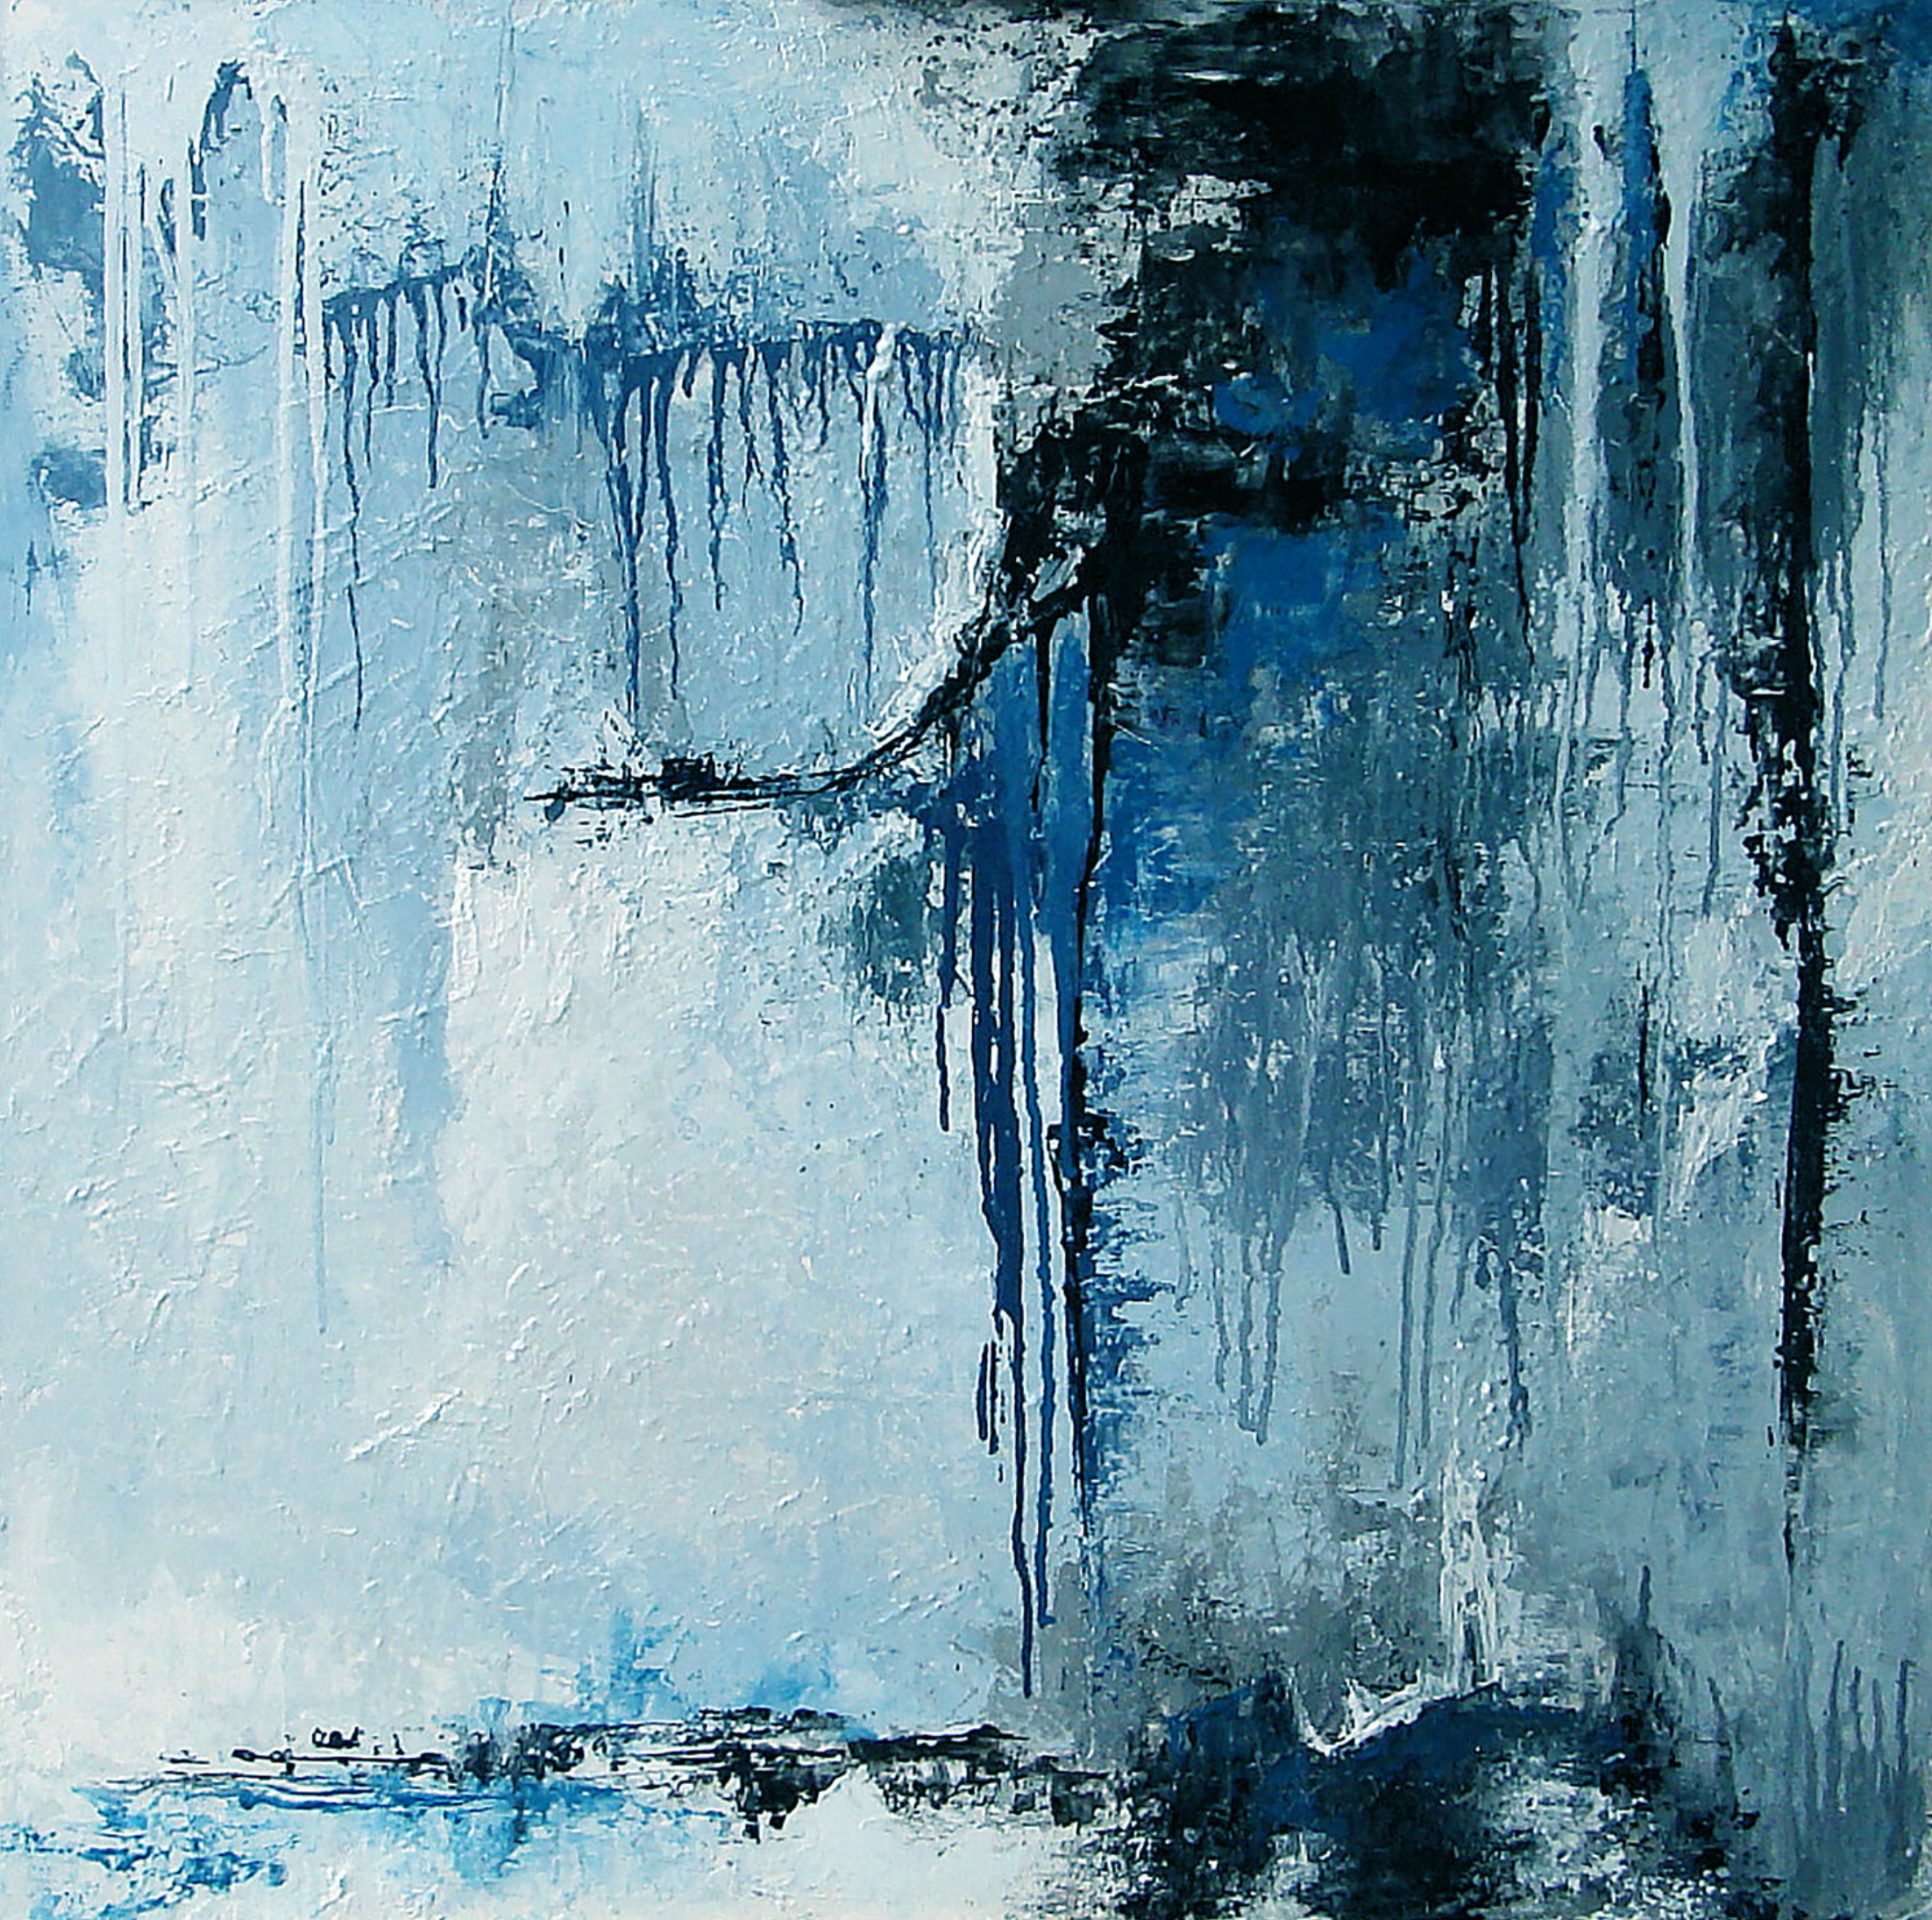 Françoise Dugourd-Caput的 "Acier "抽象画展示了熔化的金属滴在浮雕上的印象，让人联想到墙壁或由午夜蓝色接壤的灰色和蓝色物质的突兀悬崖。凉爽的气氛